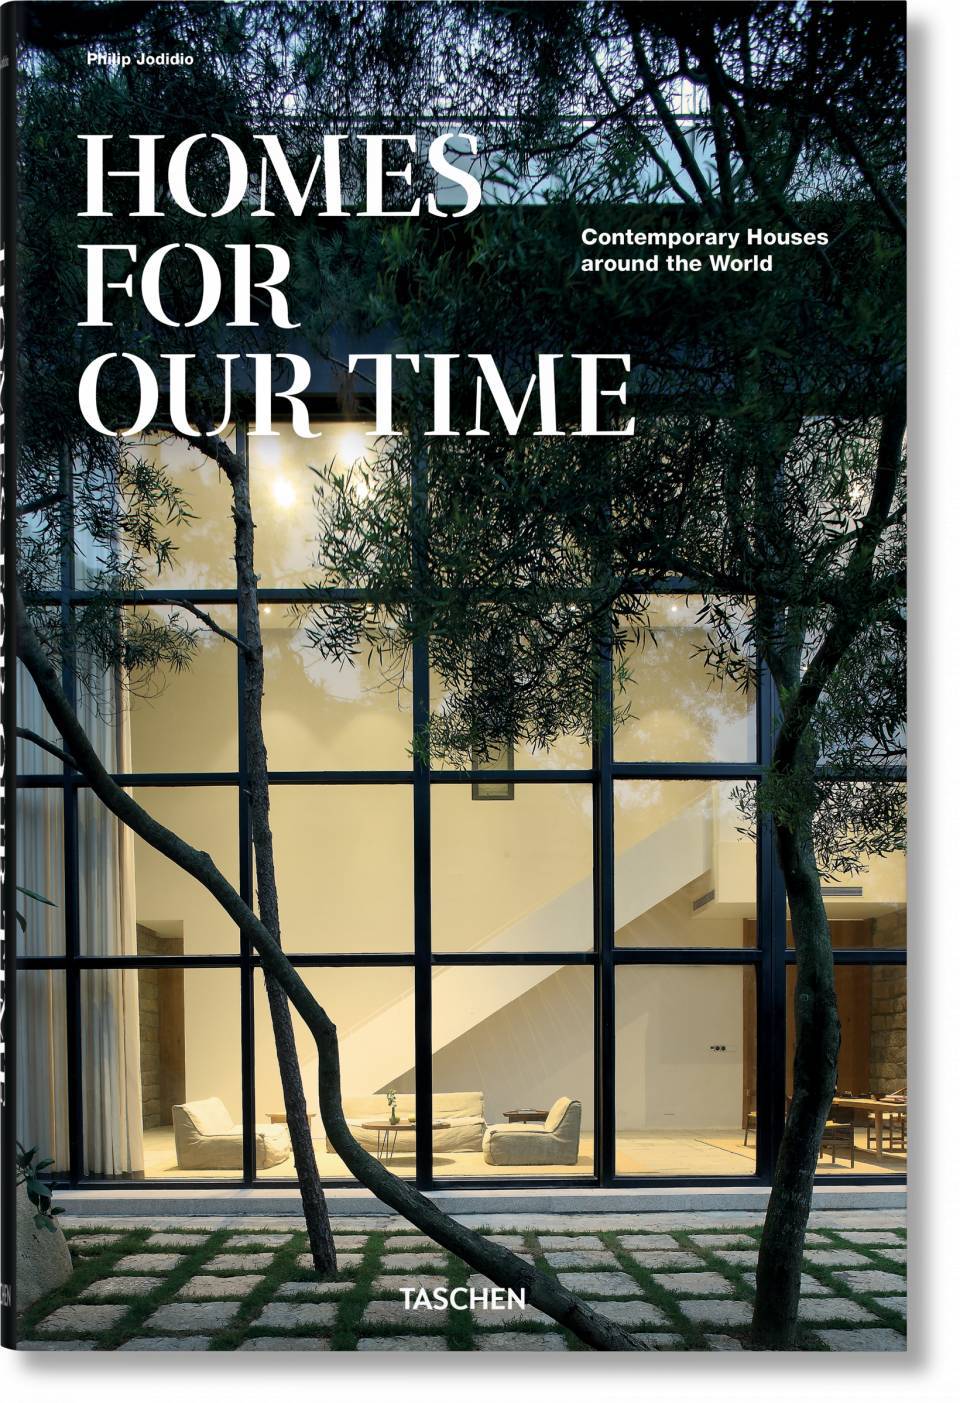 Libro Taschen Homes for Our Time. Viviendas contemporáneas alrededor del mundo - Bayolo Concept Store